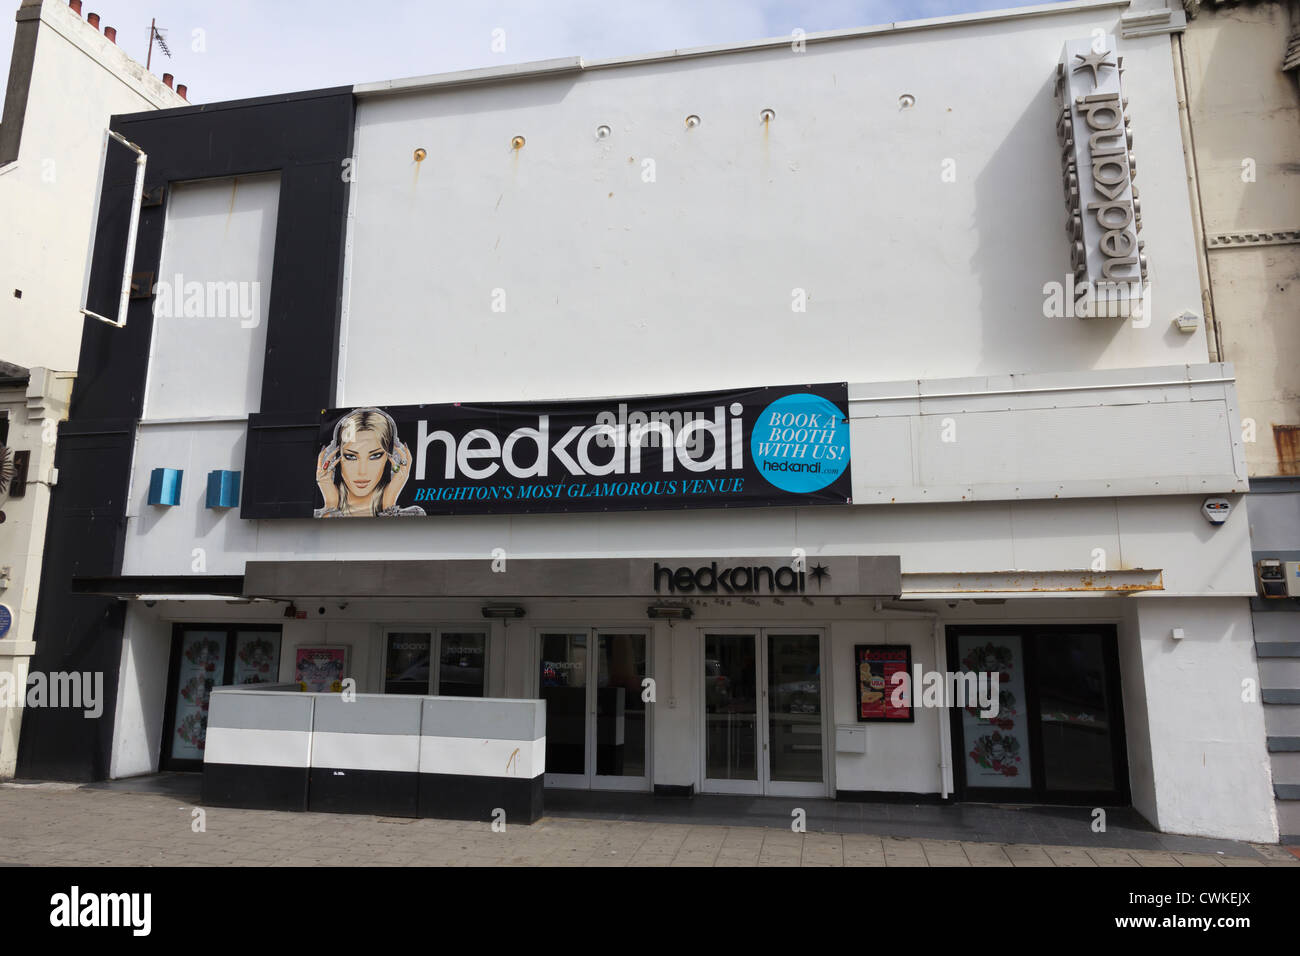 Hedkandi night club Brighton. Stock Photo